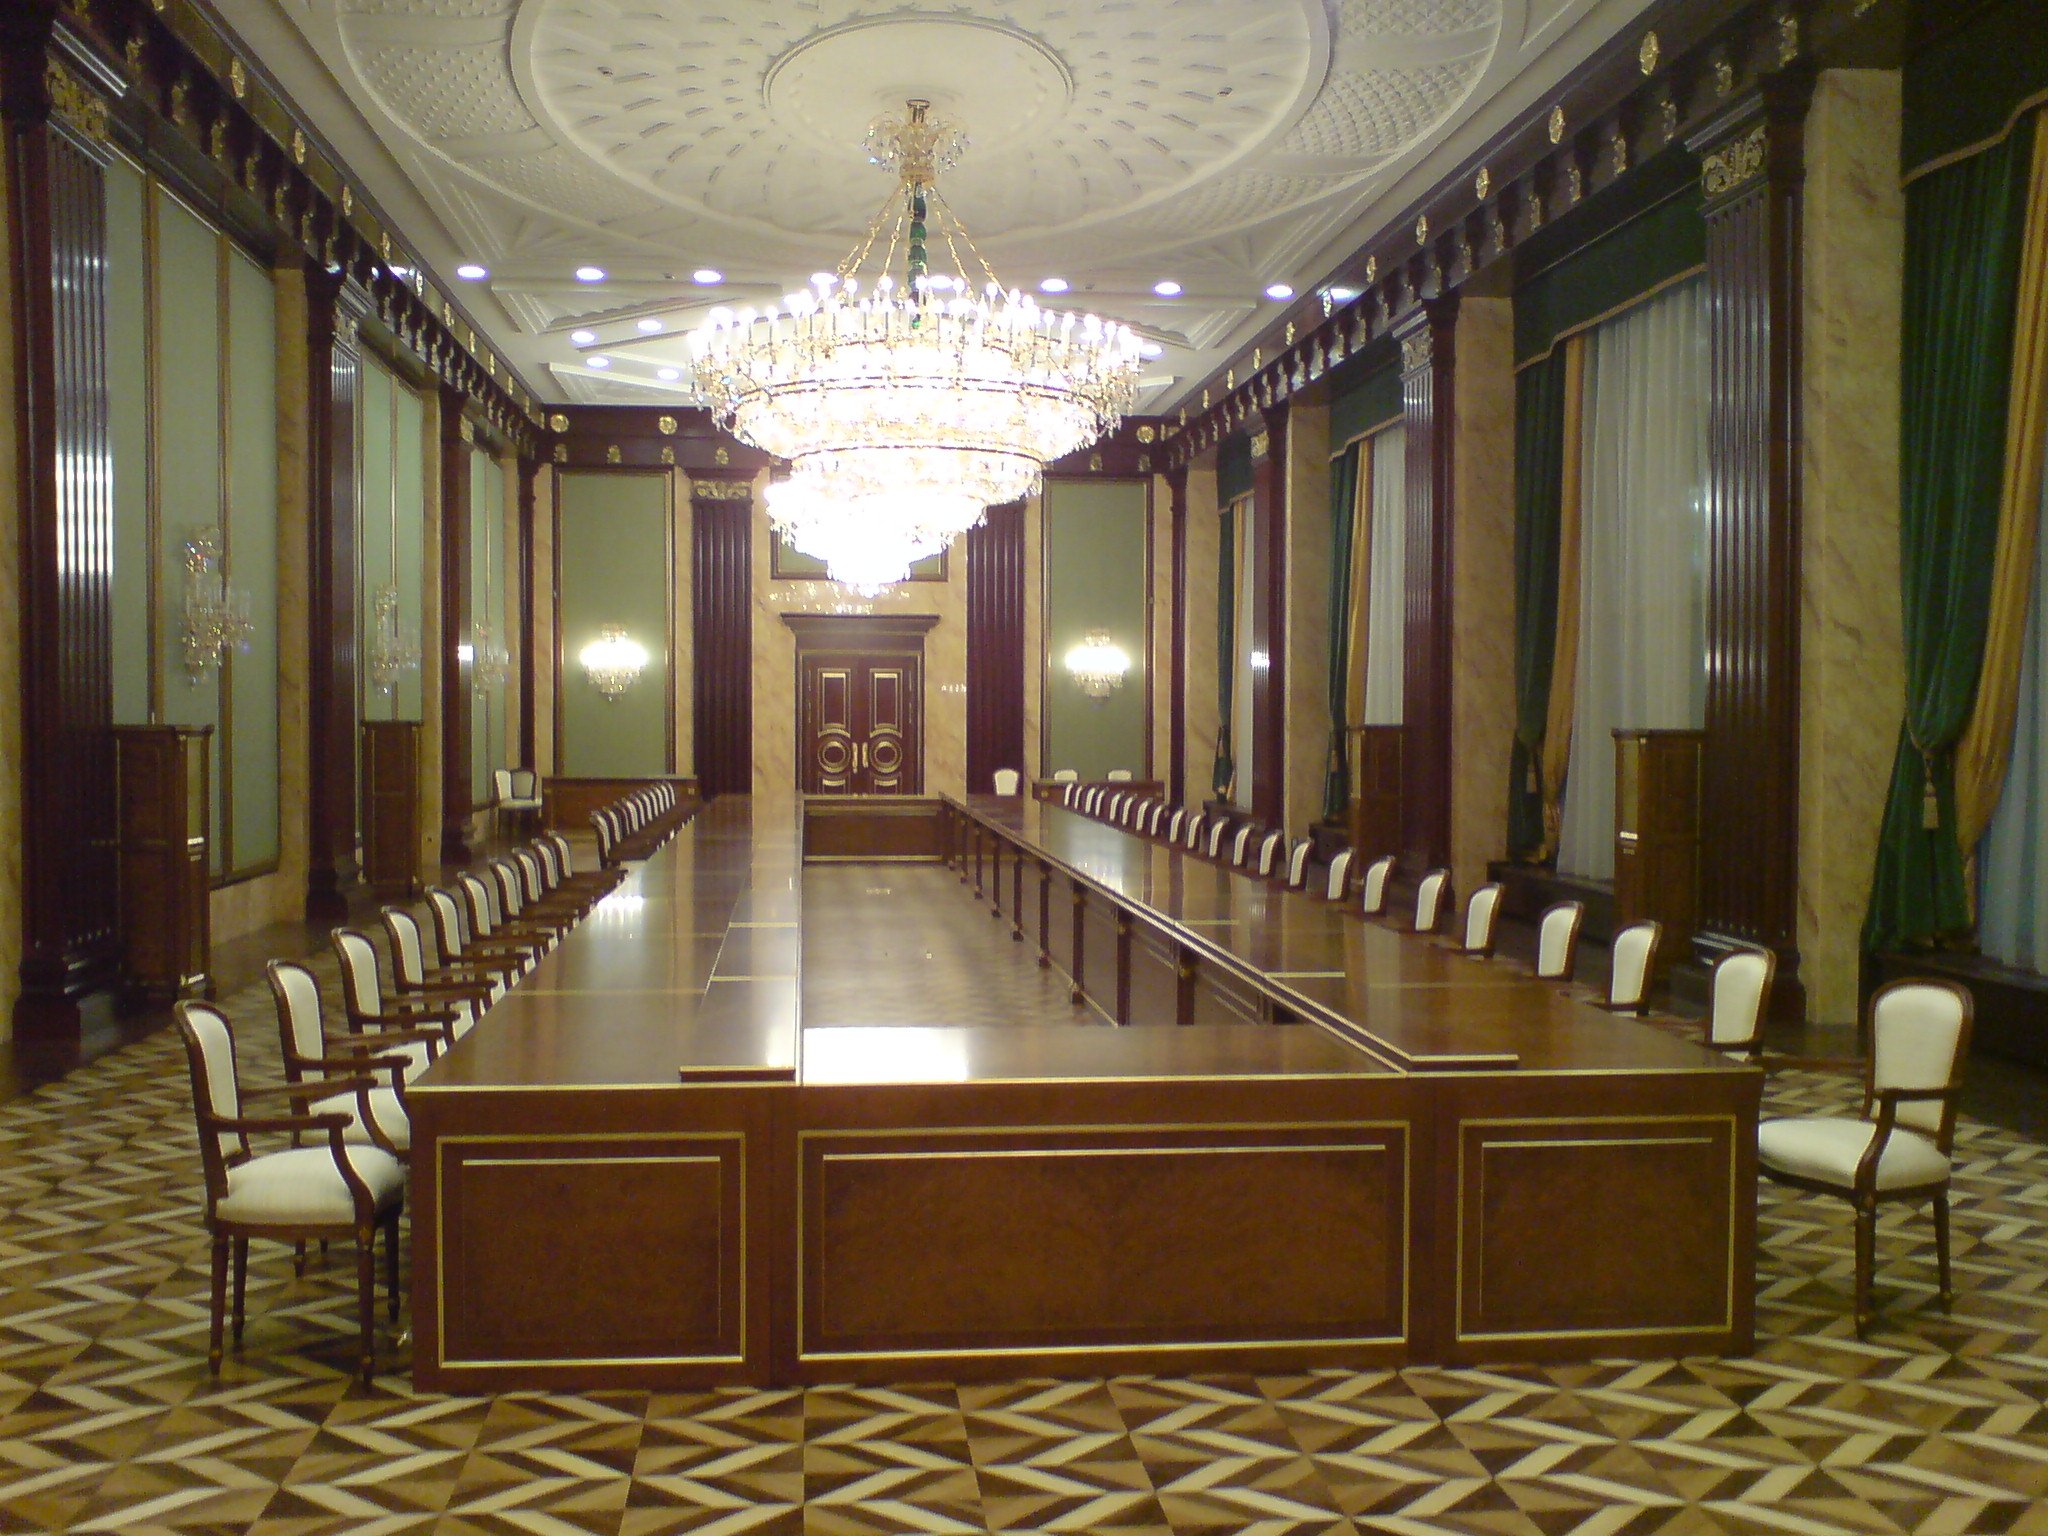 Дом правительства РФ внутри зал